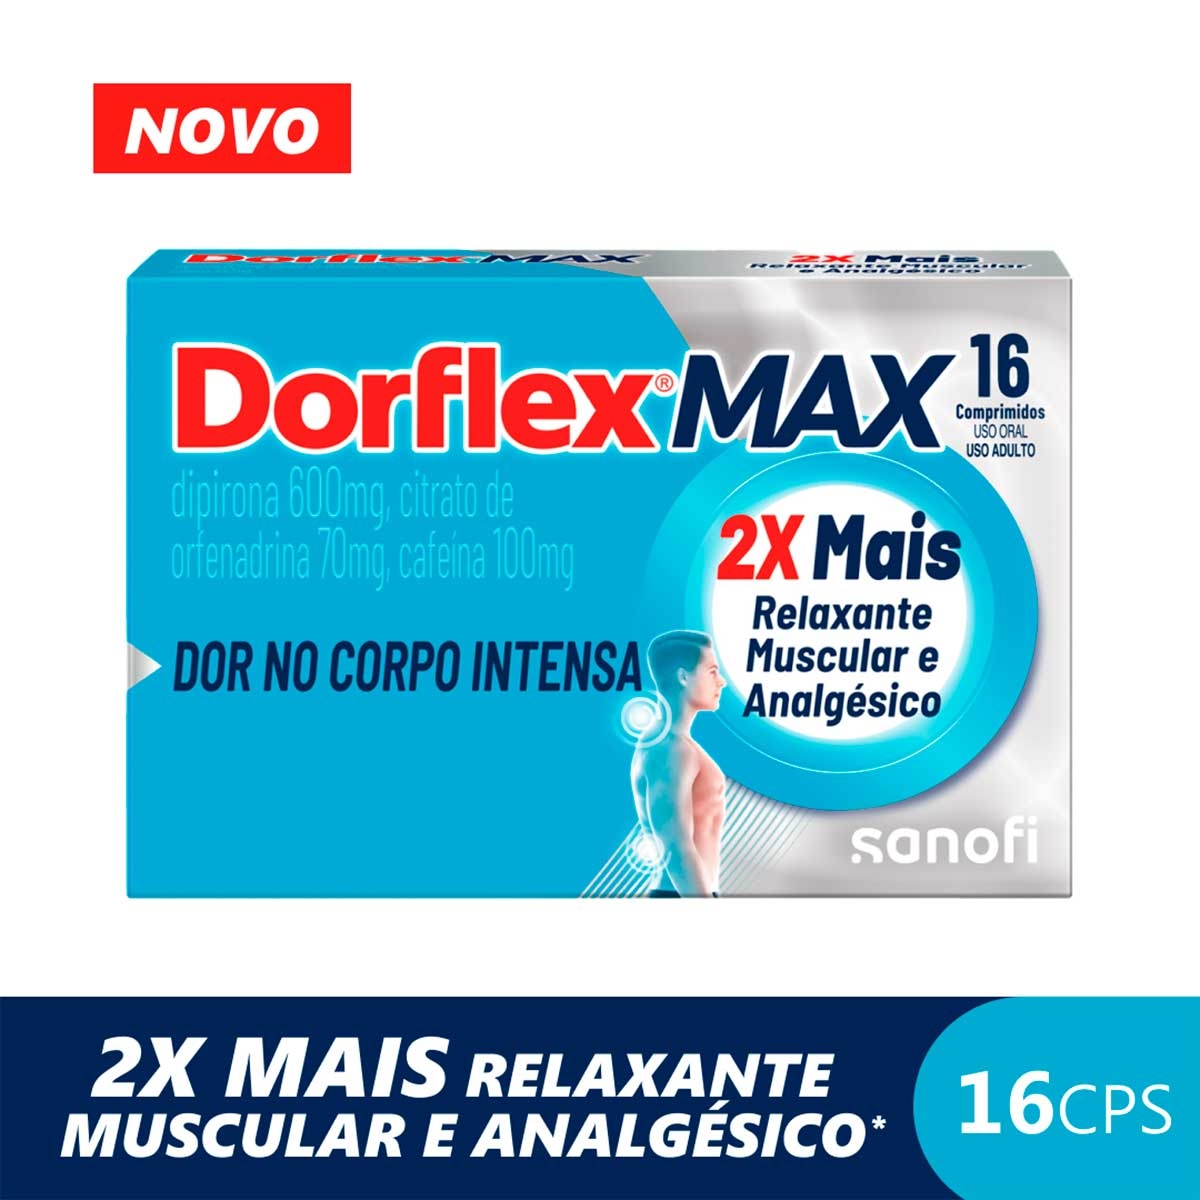 Dorflex Max Dipirona 600mg + Citrato de Orfenadrina 70mg + Cafeína 100mg 16 comprimidos